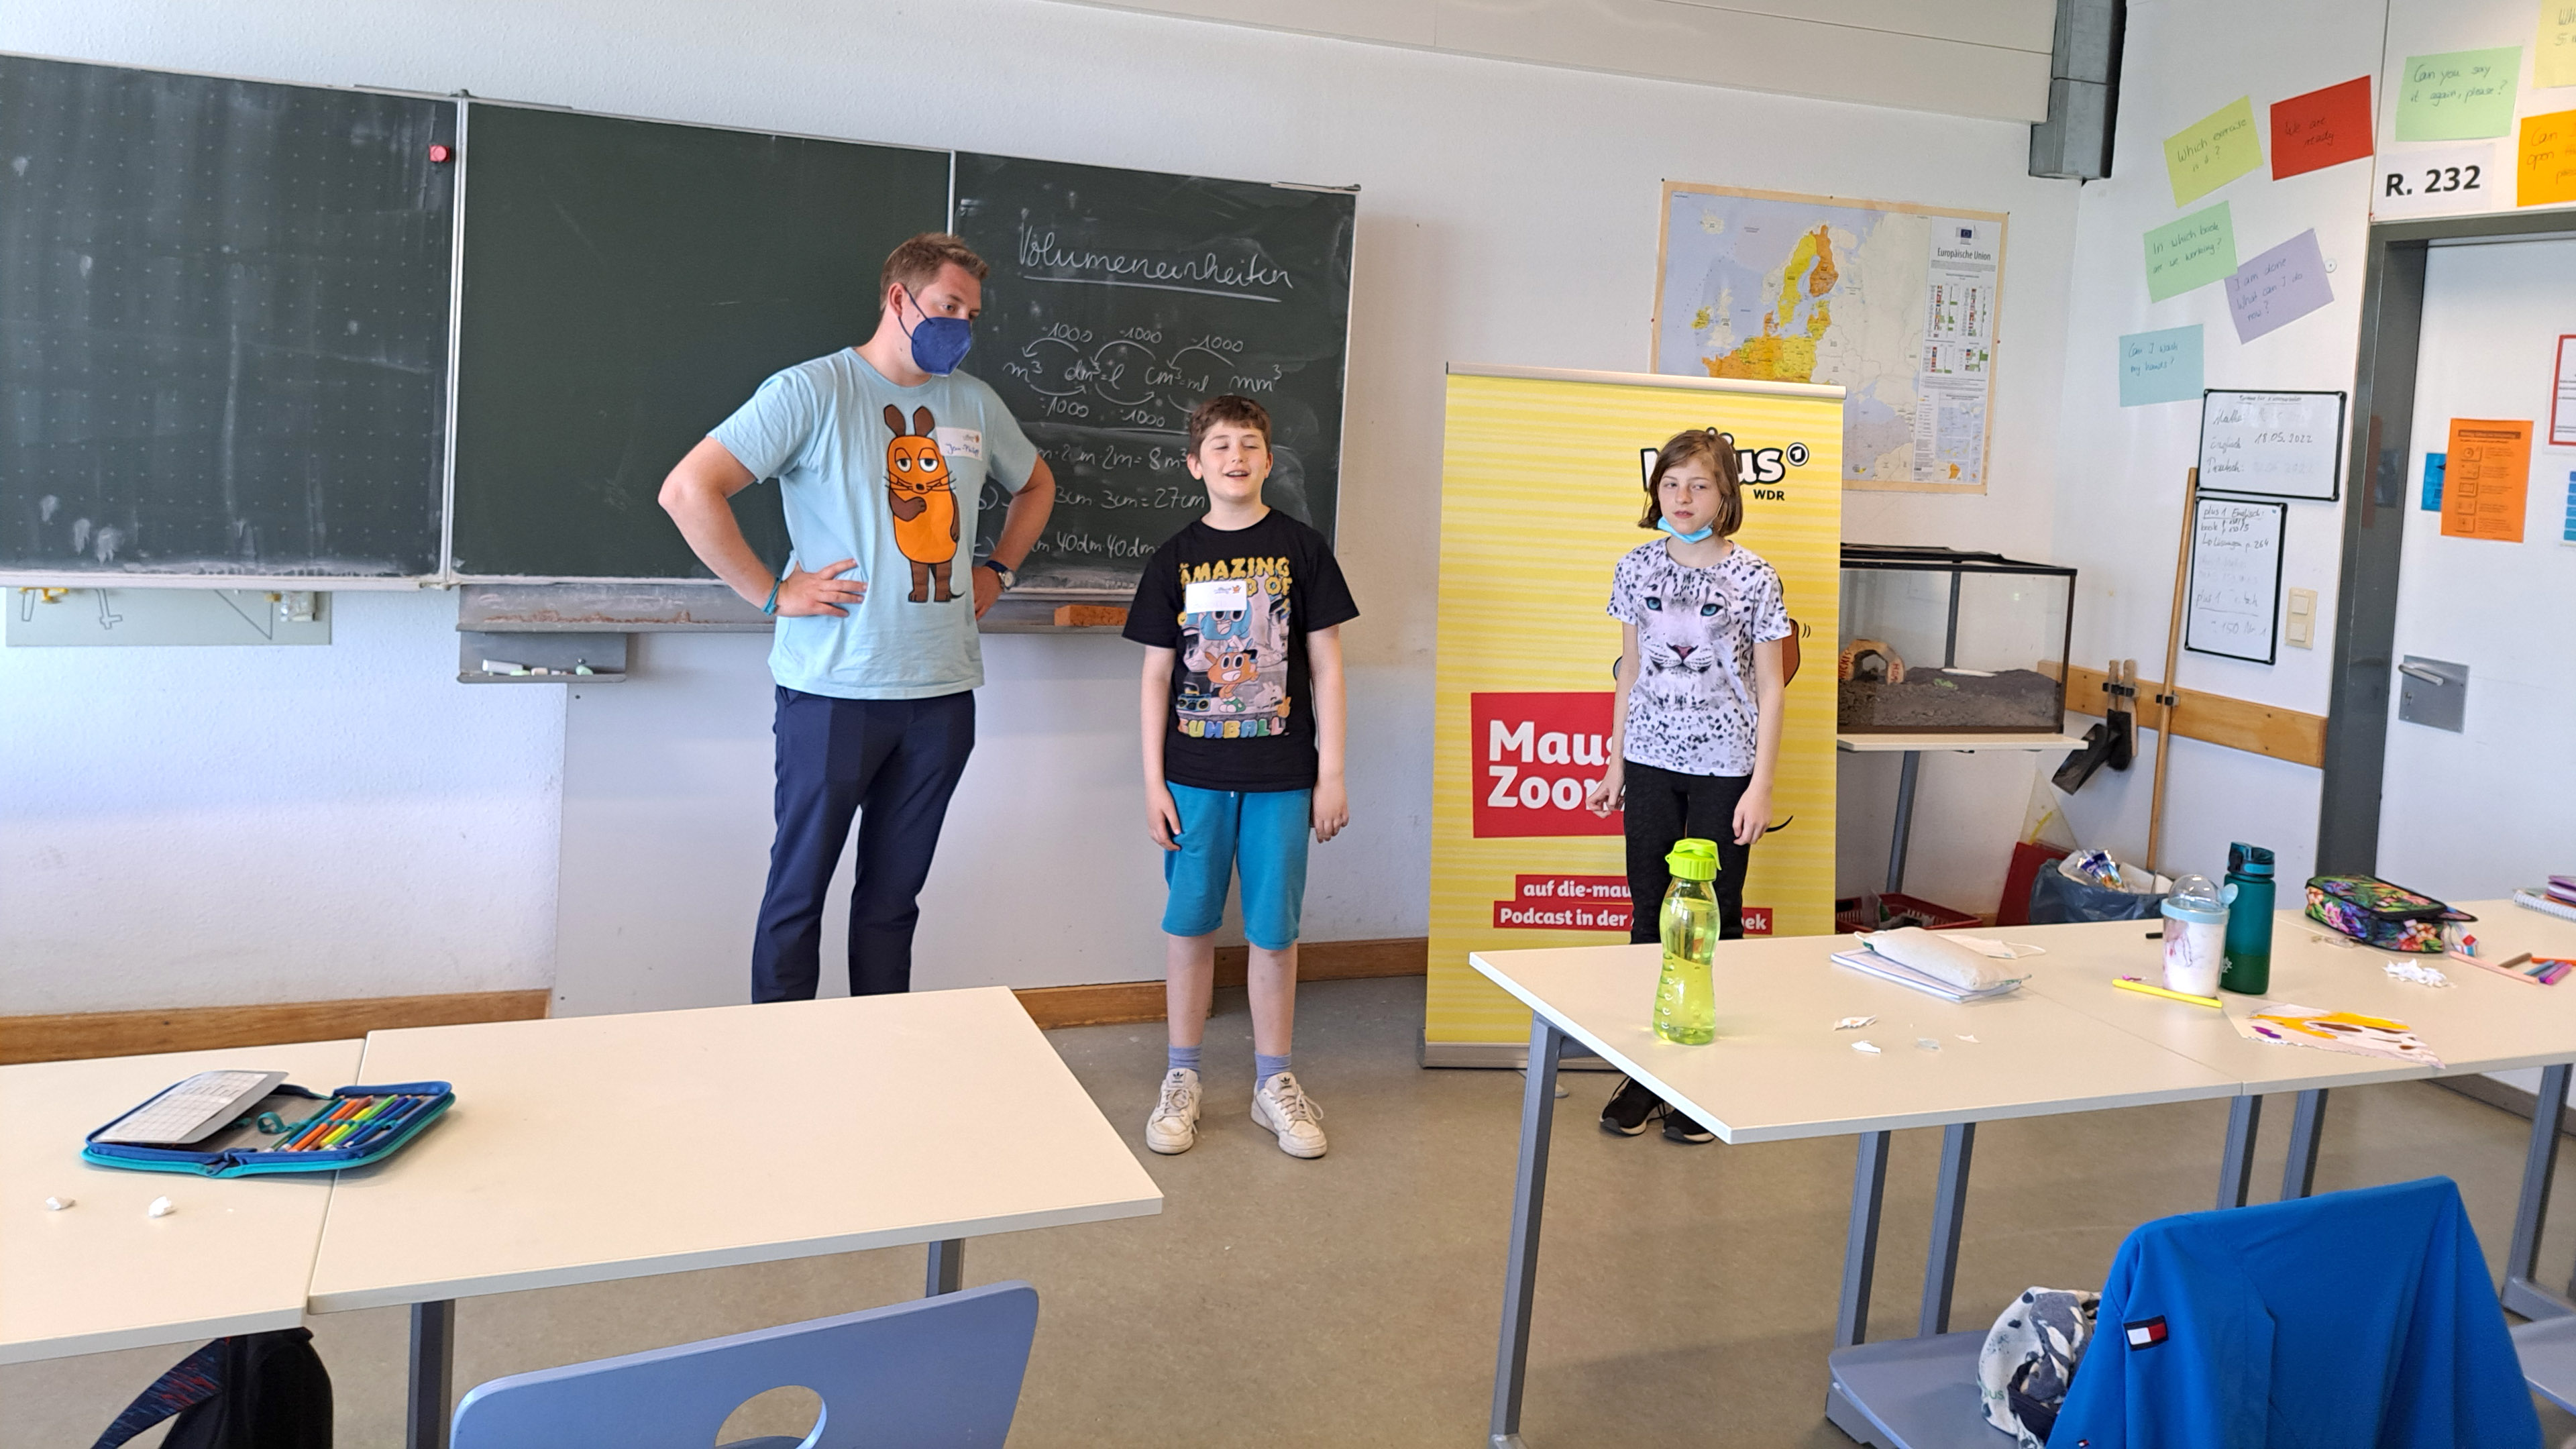 Kinder der Wuppertaler MausKlasse und Maus-Reporter Jan-Philipp während der MausZoom-Konferenz